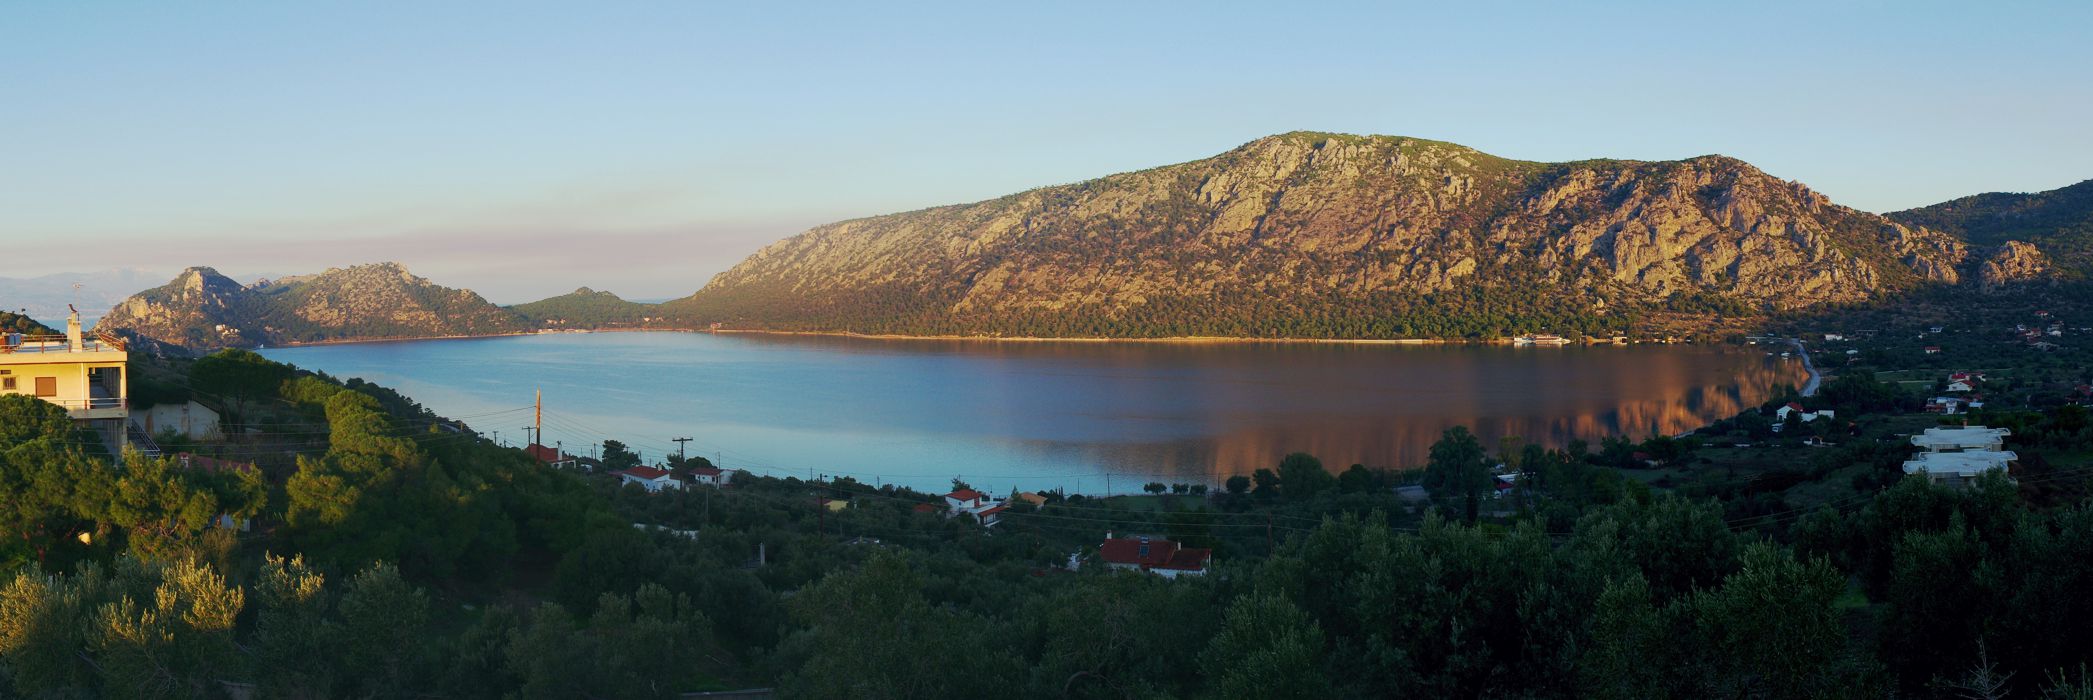 Λίμνη Βουλιαγμένη Λουτρακίου: Γενική εικόνα της λίμνης